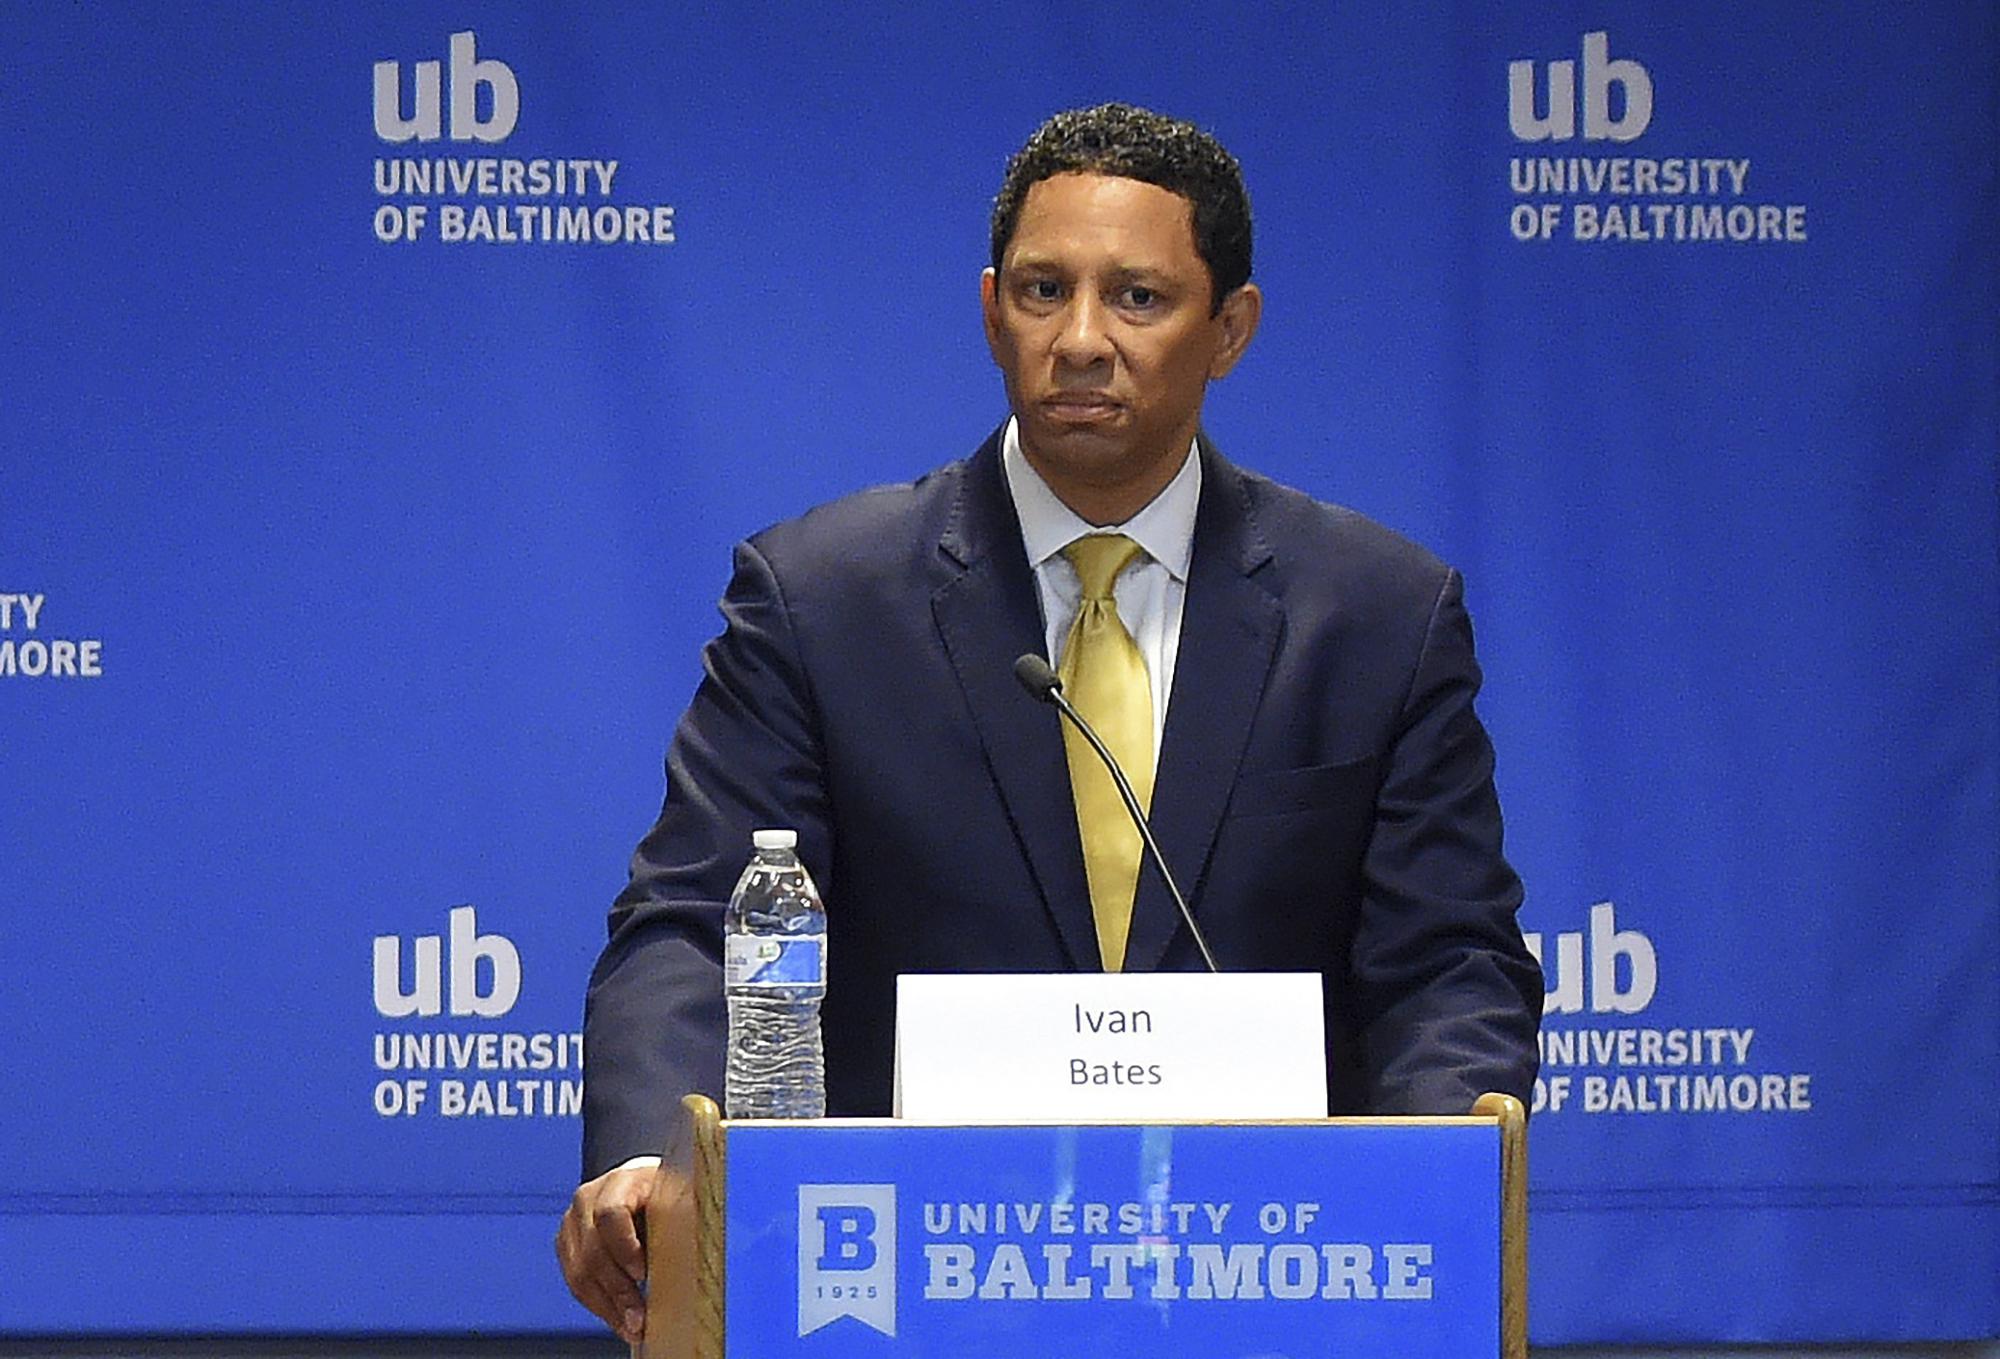 Ivan Bates ahora sin oposición para fiscal del estado de Baltimore